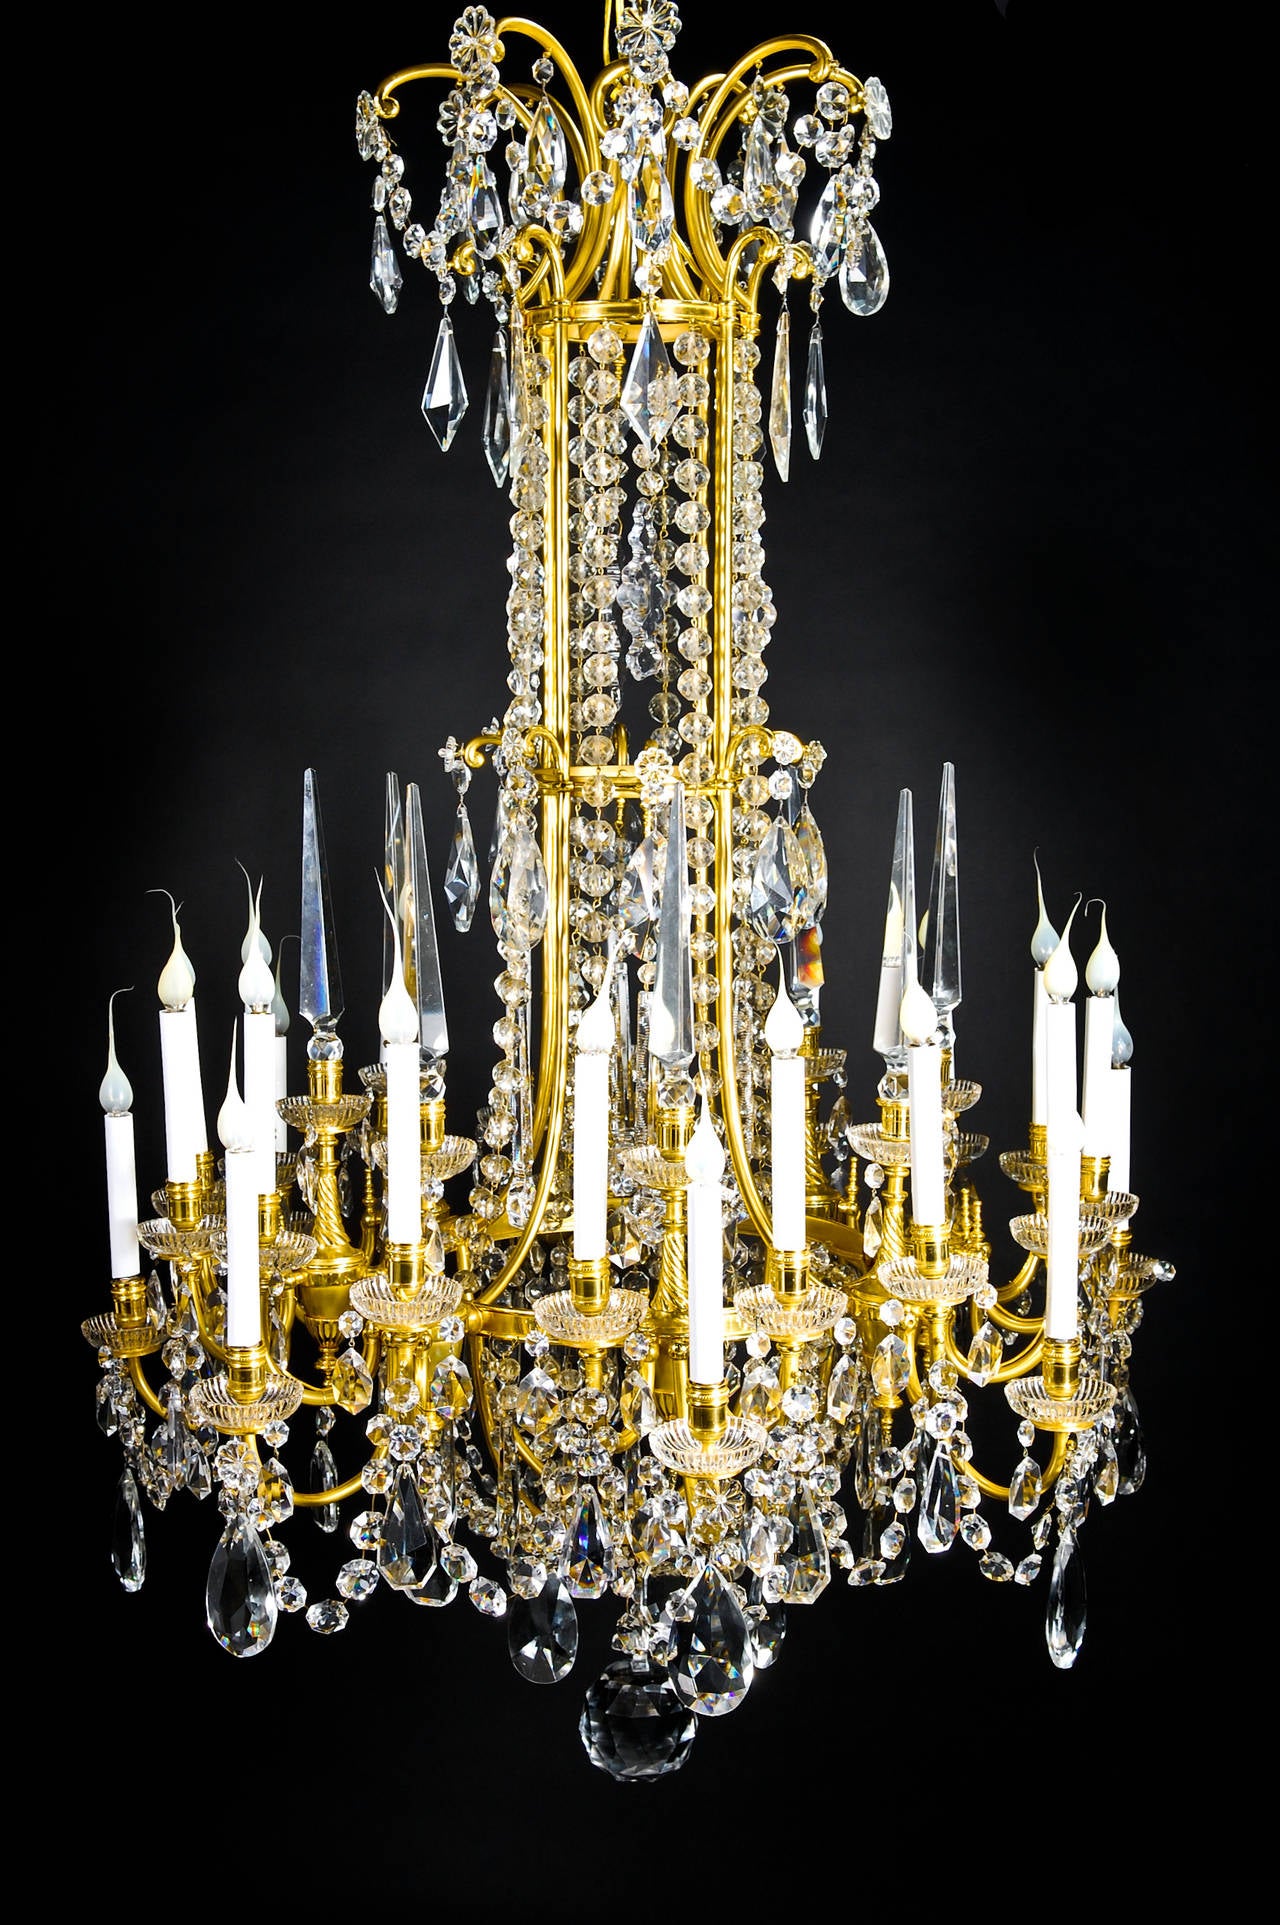 Un spectaculaire et grand lustre ancien français de style Louis XVI, en bronze doré et cristal taillé, à trois niveaux et à plusieurs lumières, embelli par des bobeches en verre, des chaînes en cristal taillé et orné de prismes en cristal taillé de